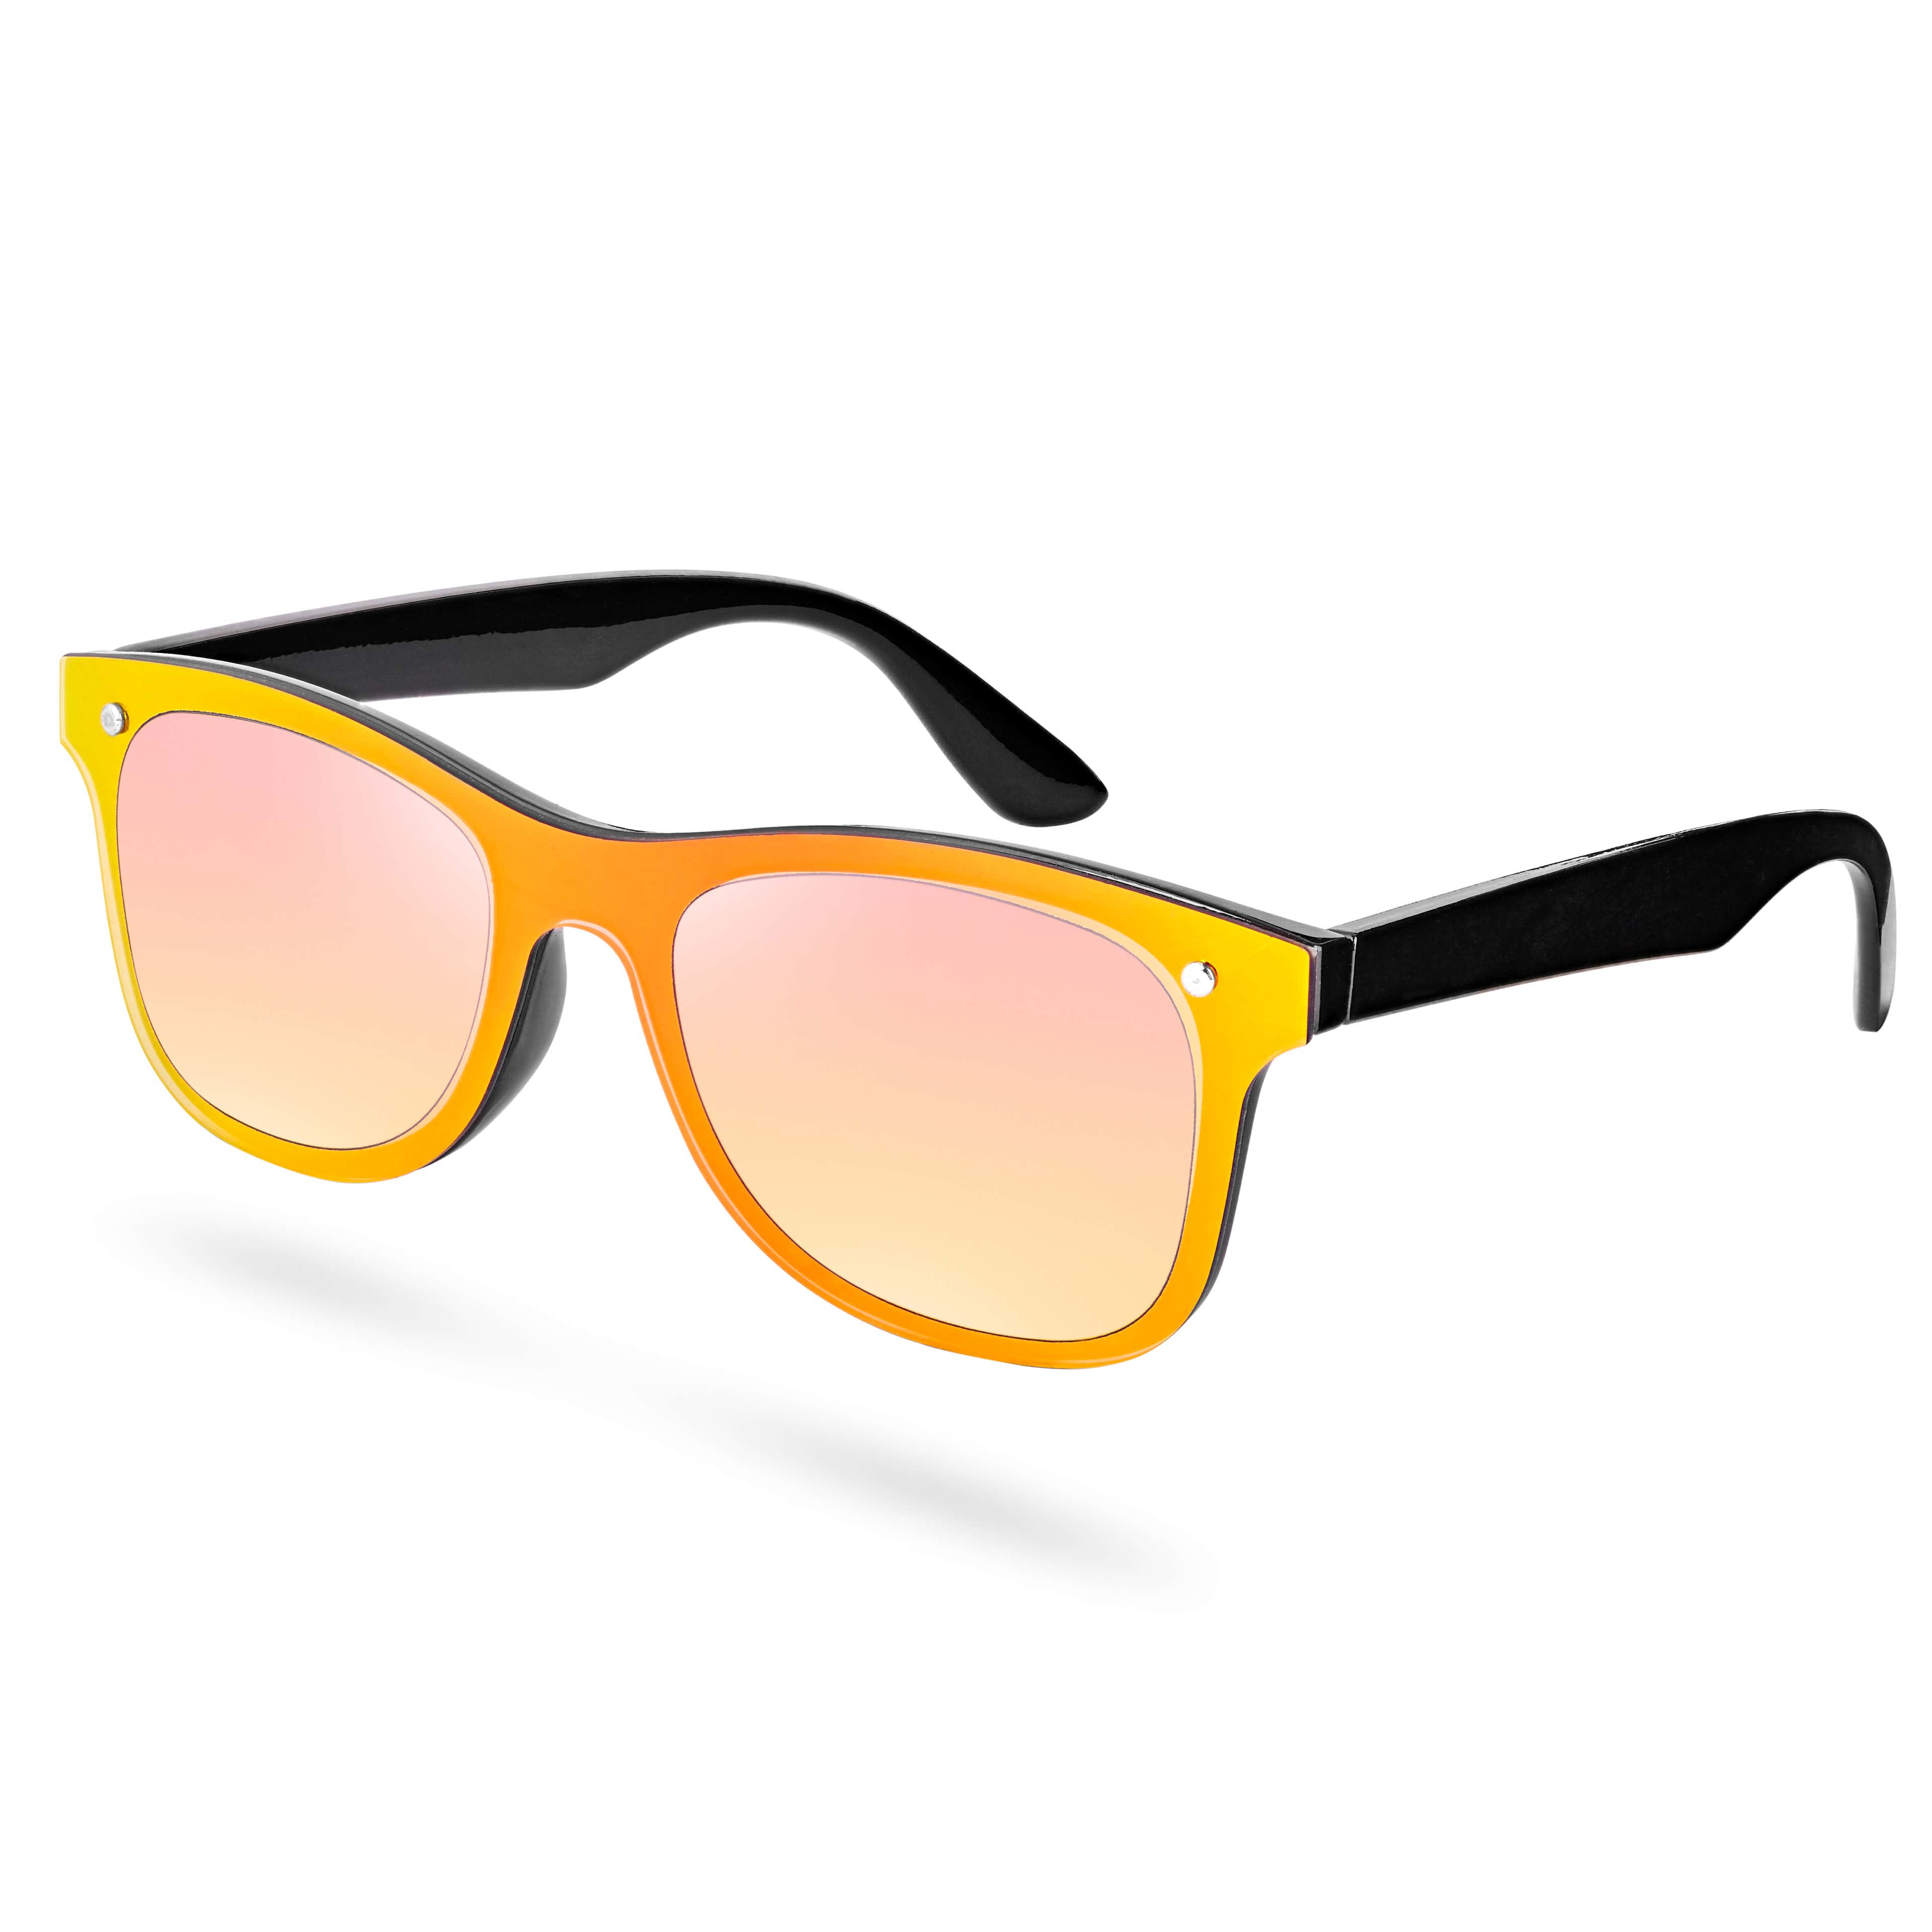 Okulary przeciwsłoneczne z żółto-czarnymi oprawkami